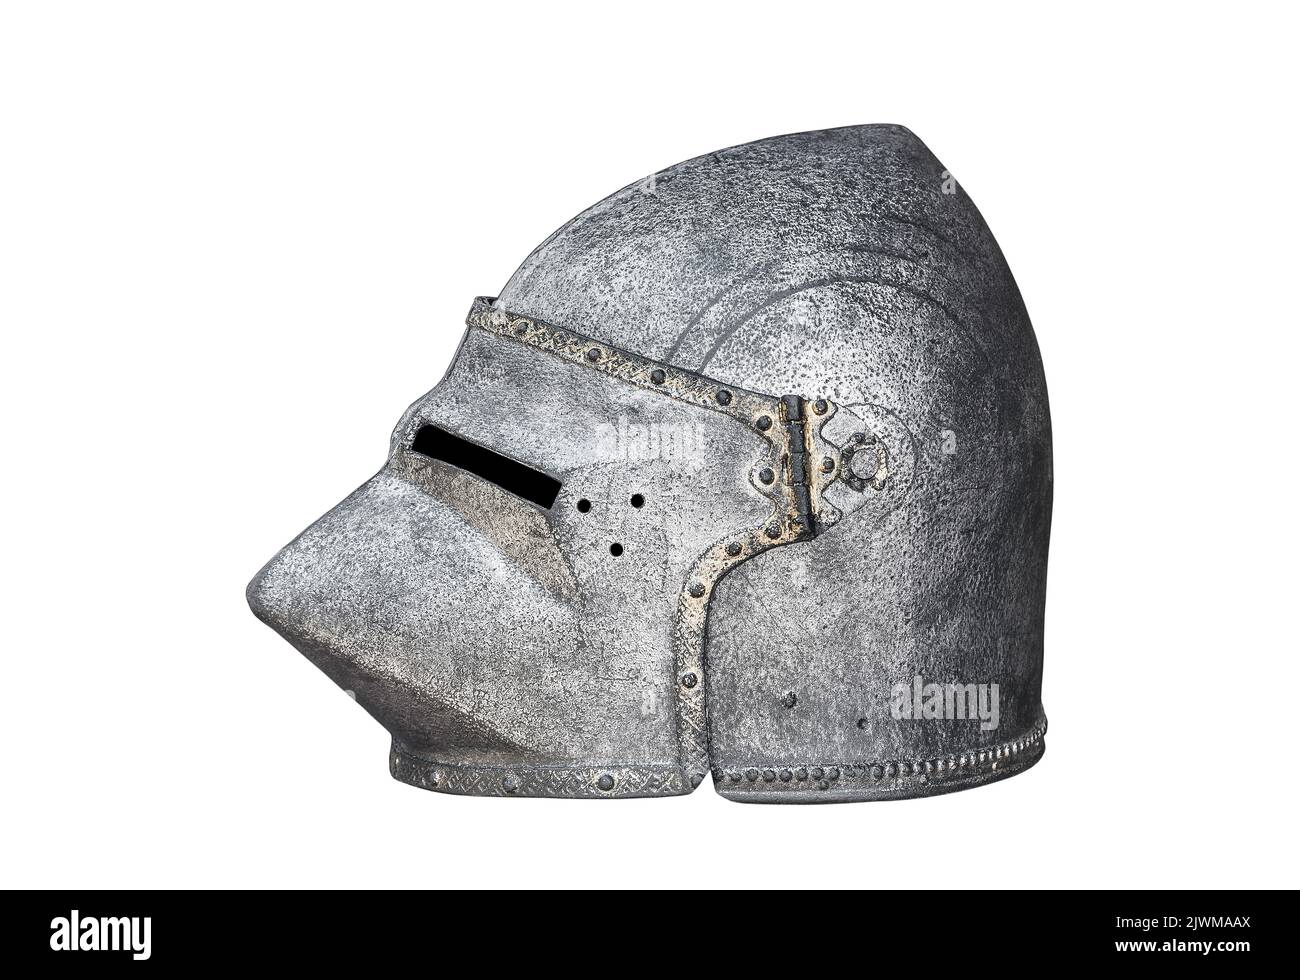 Casque chevalier médiéval isolé sur fond blanc avec passe-cheveux Banque D'Images